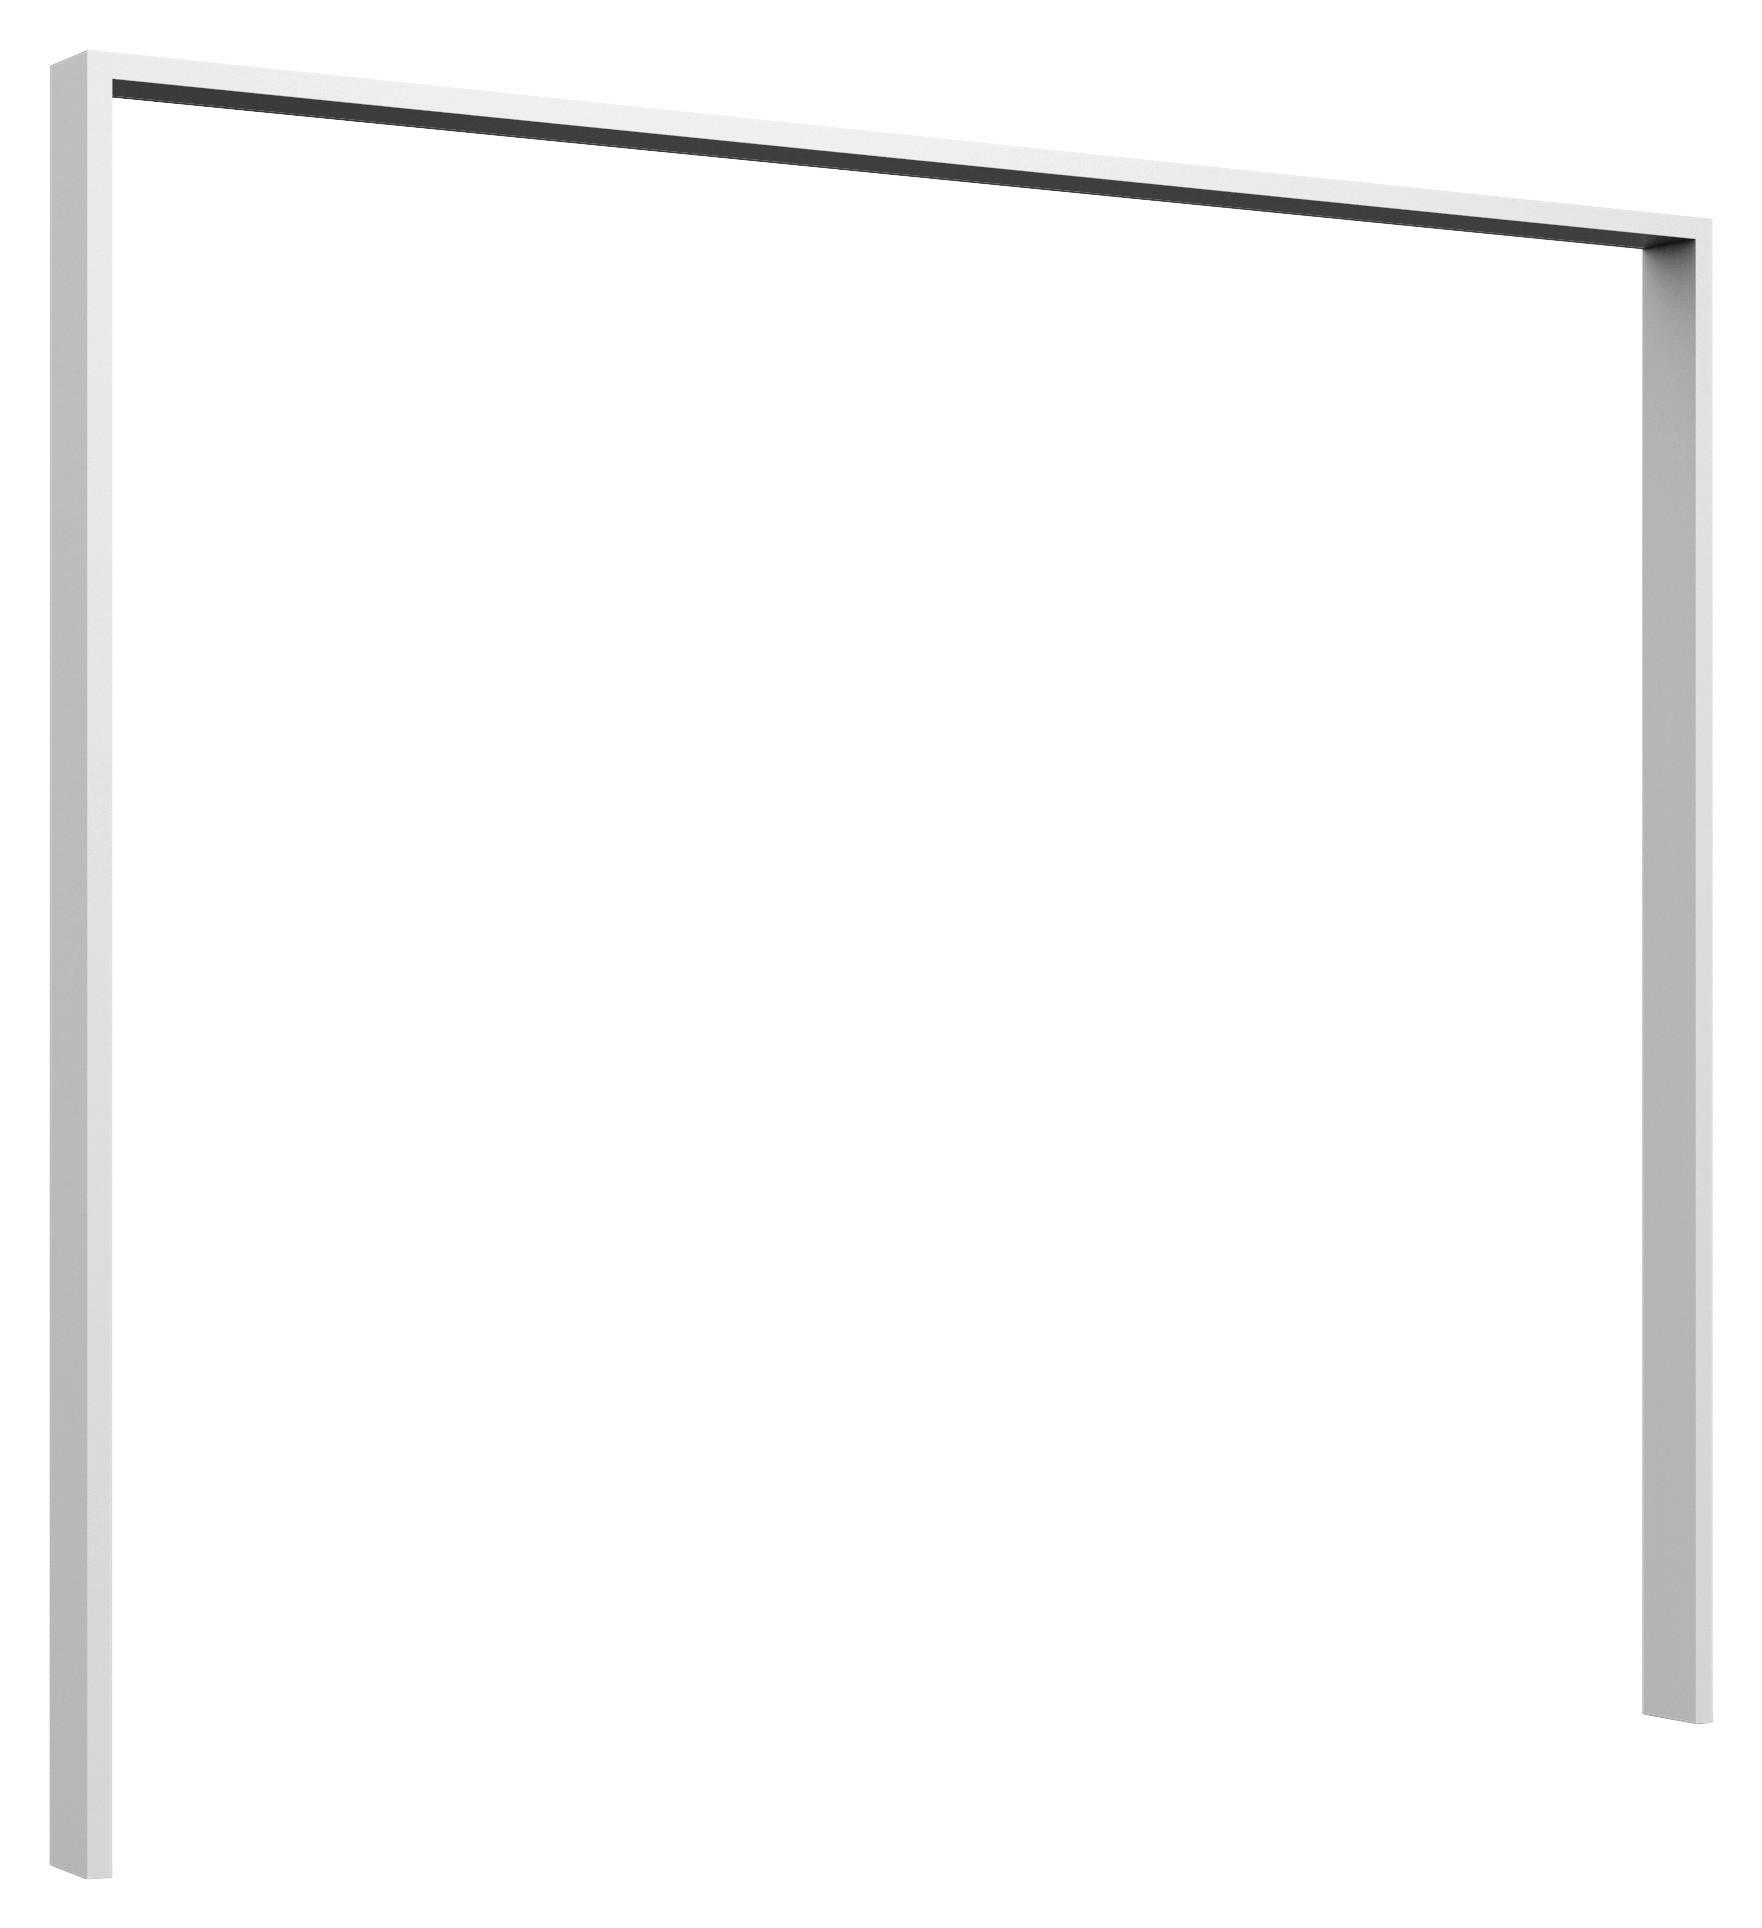 PASSEPARTOUTRAHMEN 228/213/12 cm Weiß  - Weiß, KONVENTIONELL, Holzwerkstoff (228/213/12cm) - Carryhome